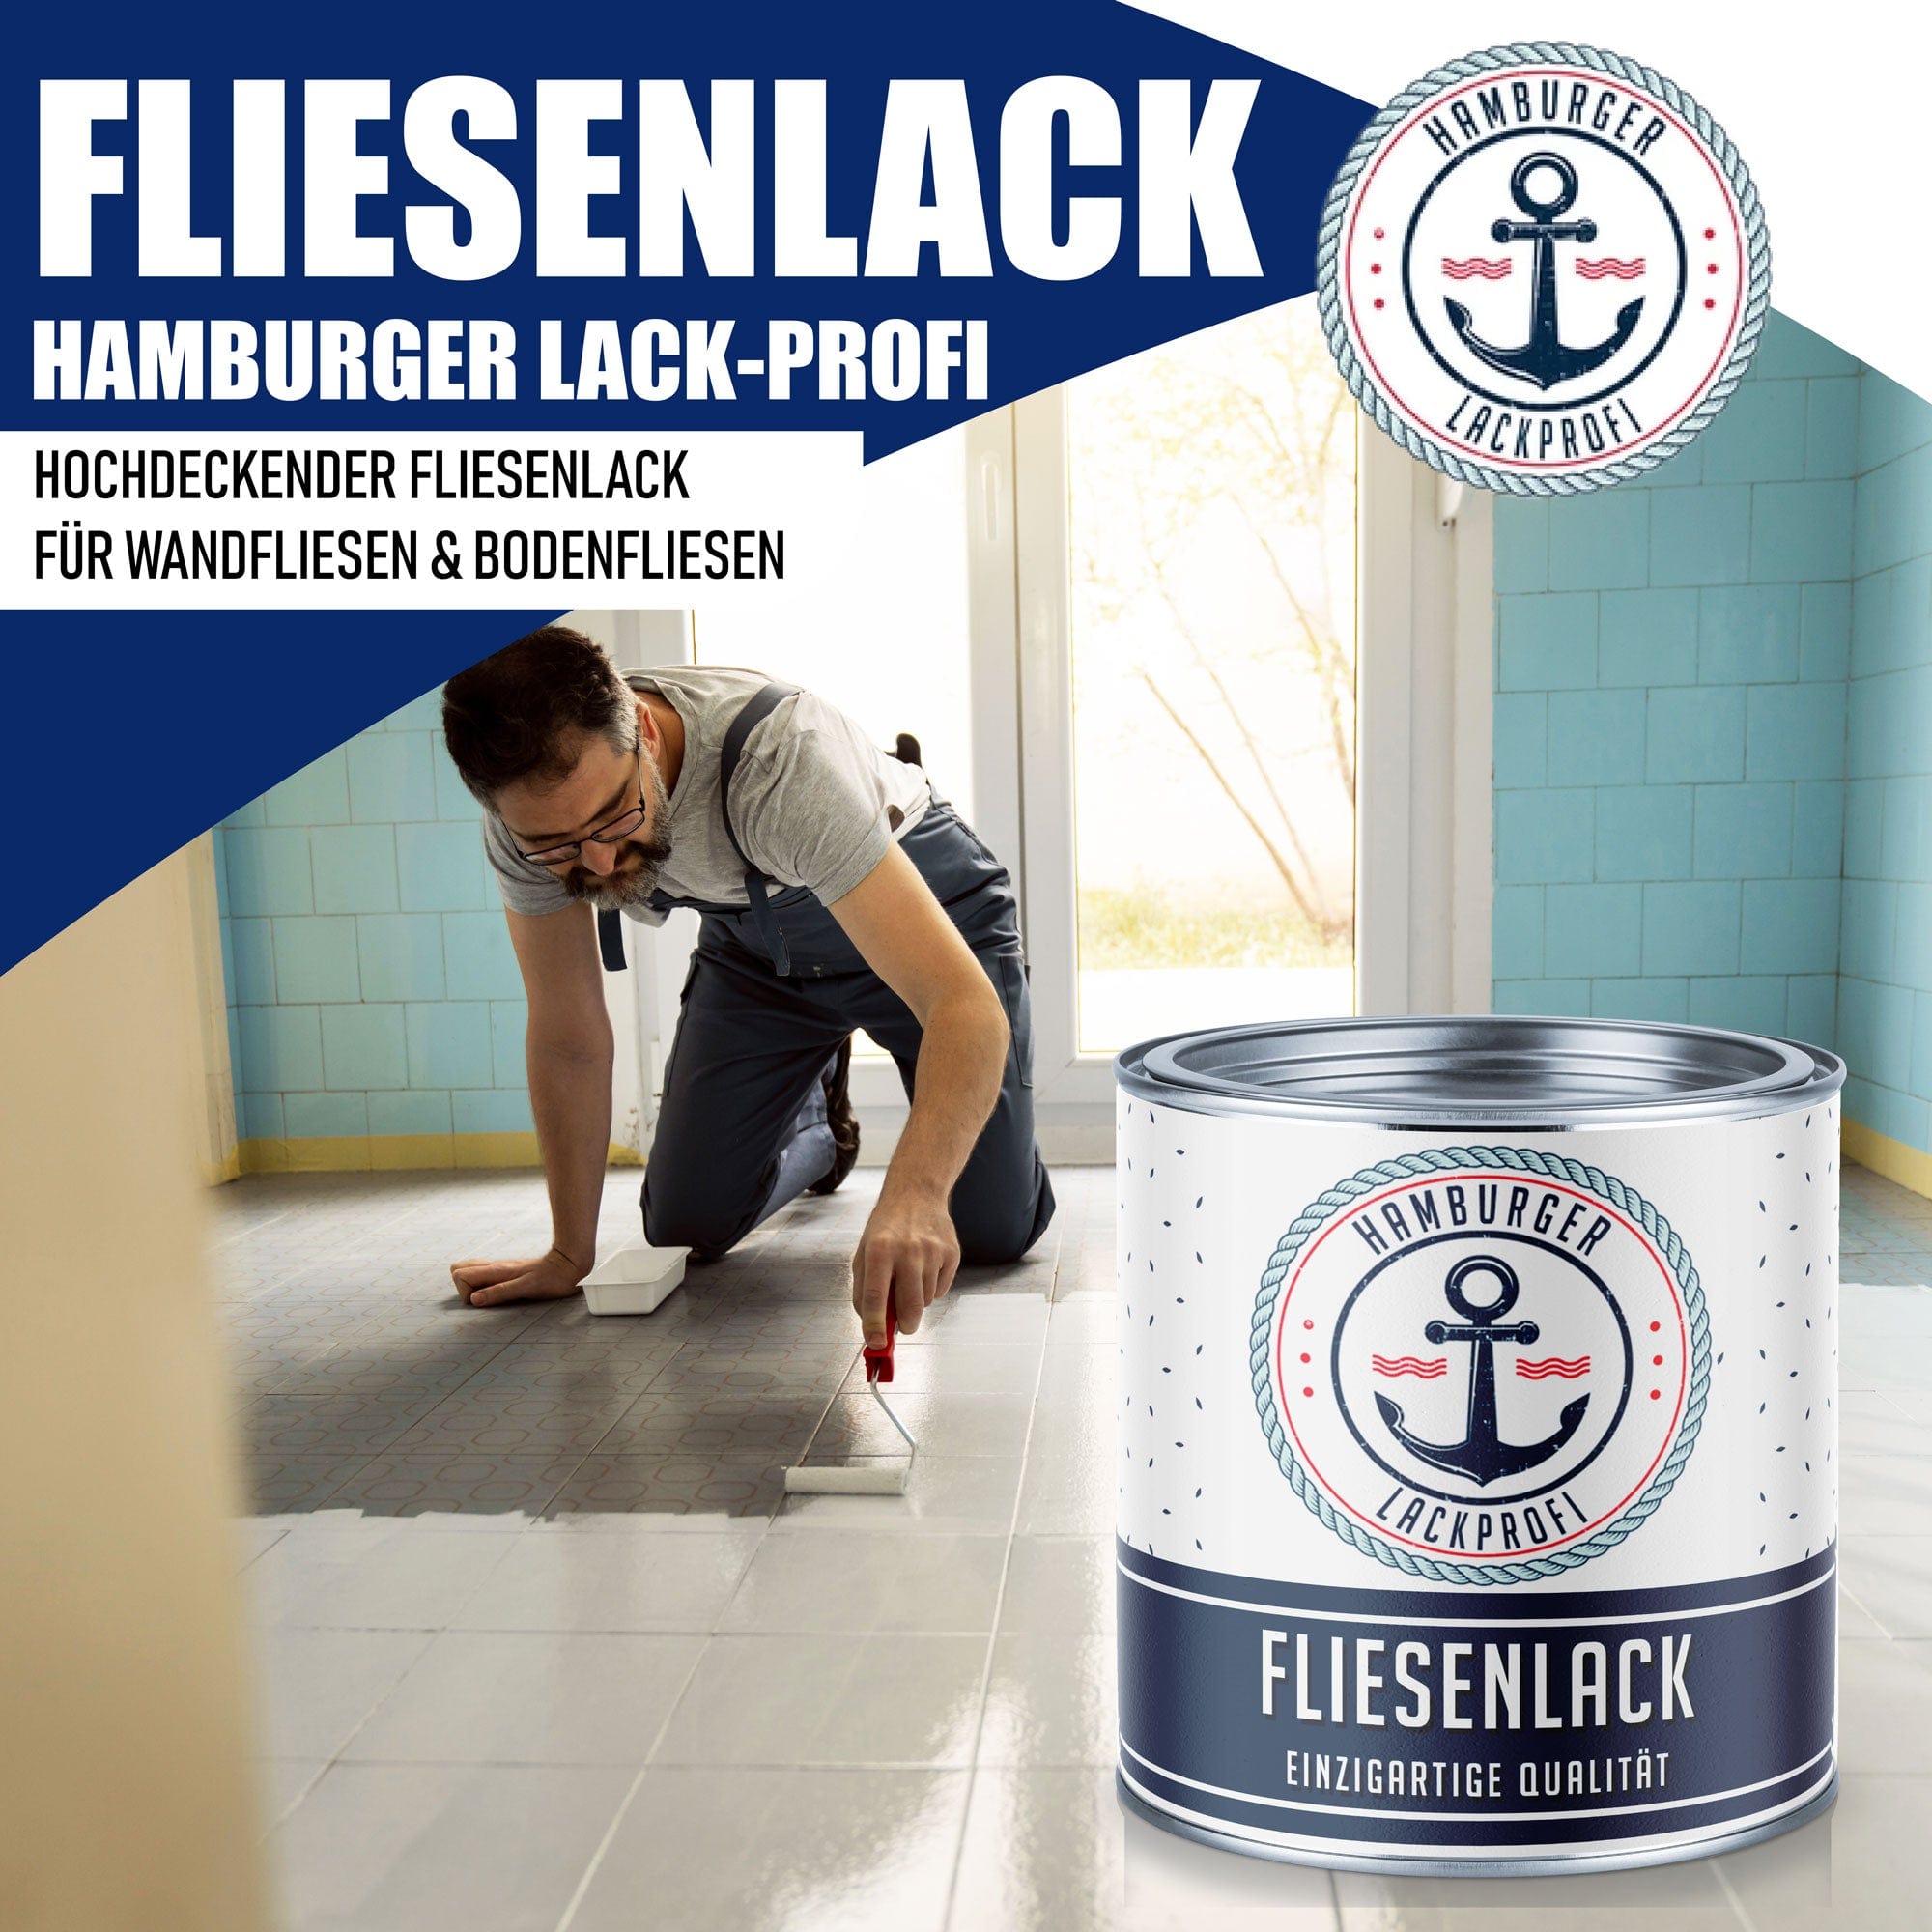 Hamburger Lack-Profi Lacke & Beschichtungen Hamburger Lack-Profi Fliesenlack - hochdeckende Fliesenfarbe